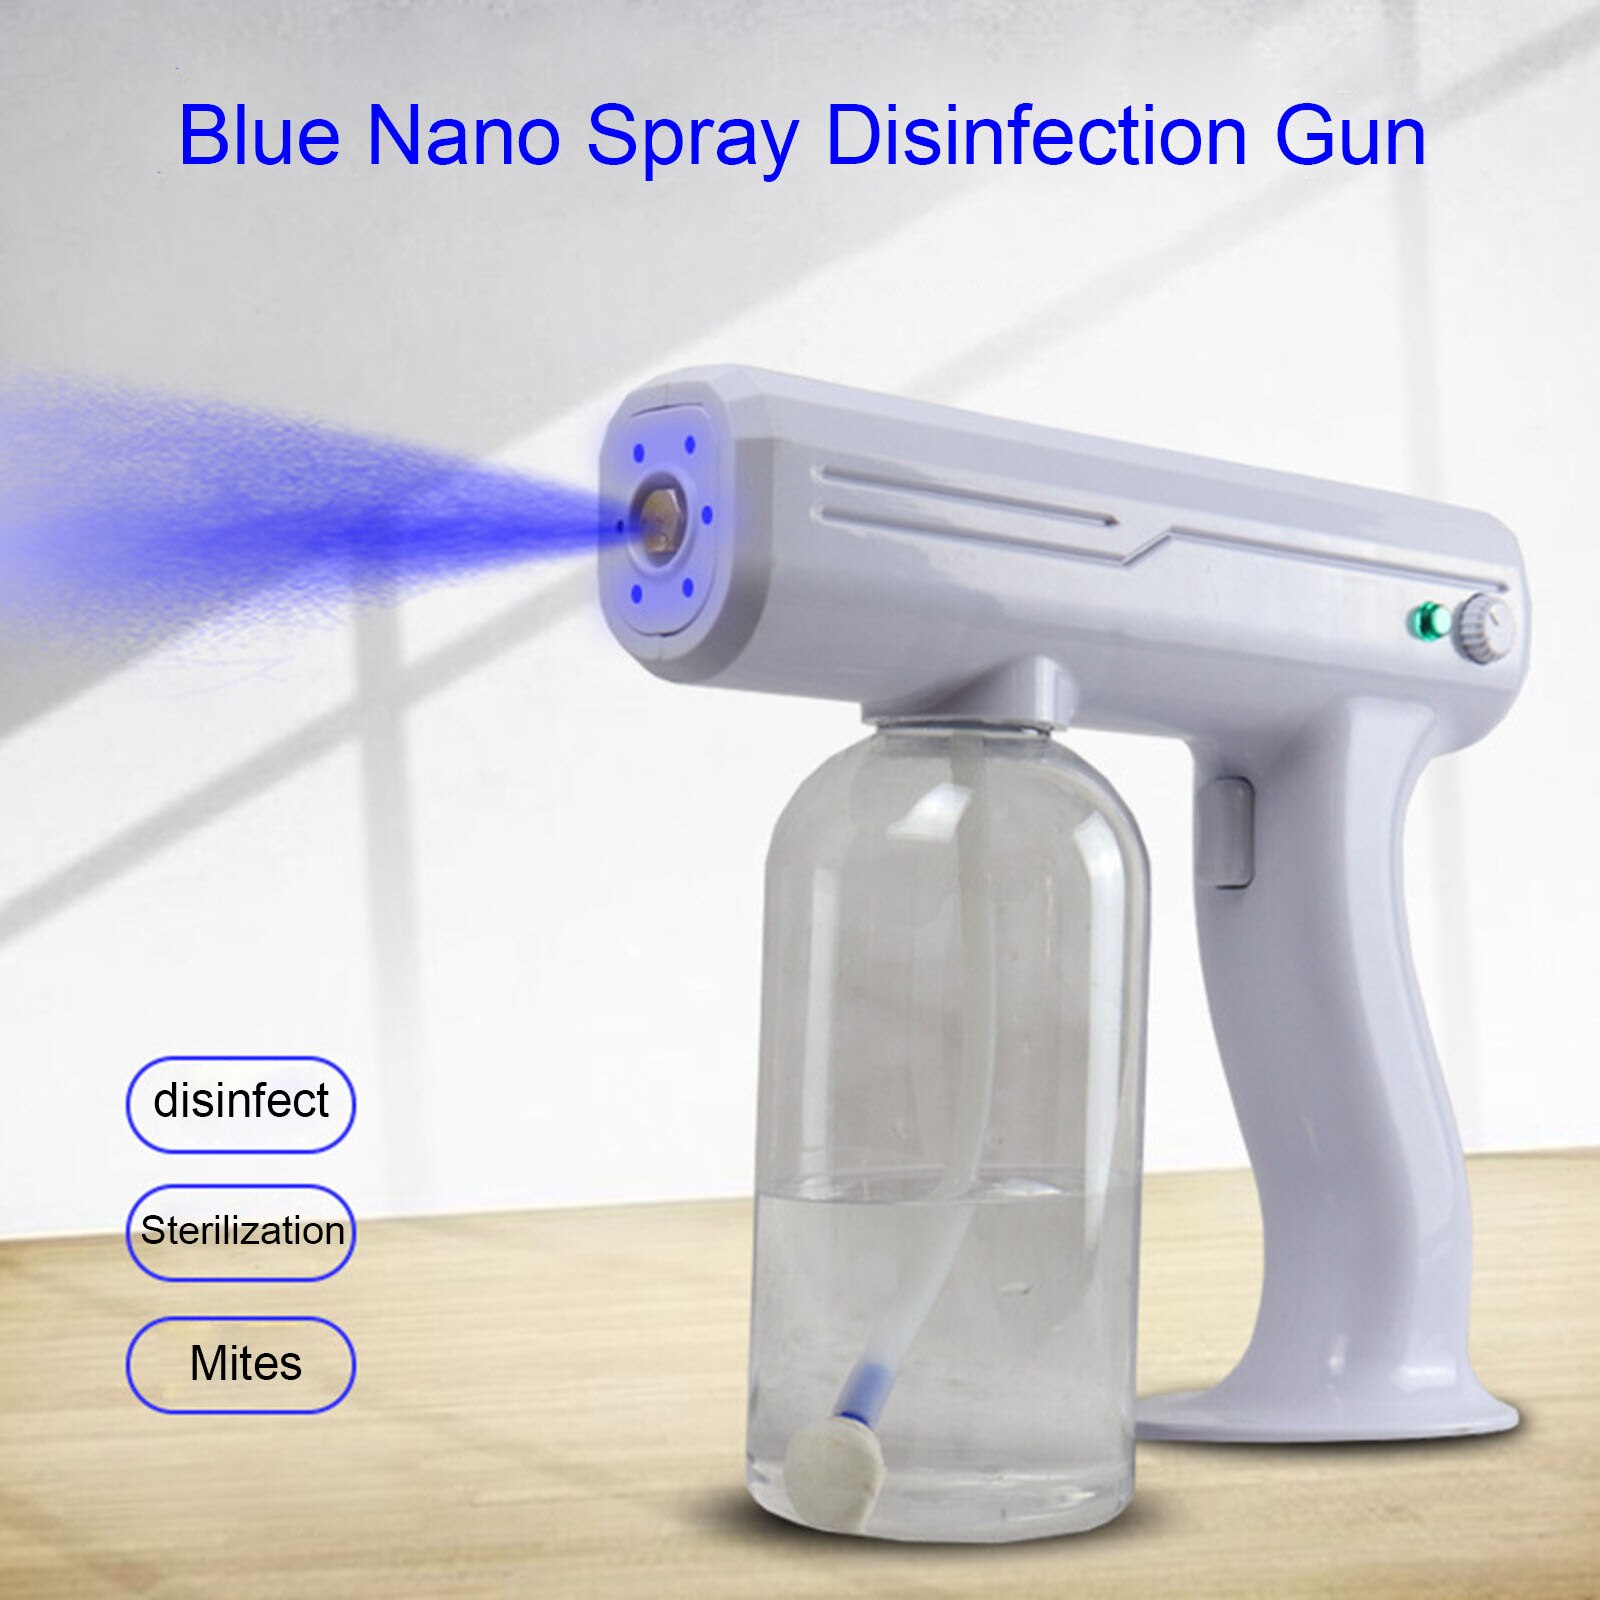 Pistolet à vapeur de pulvérisation USB charge atomiseur pistolet à vapeur de vapeur pistolet à vapeur de pulvérisation Nano sans fil Rechargeable UV 800ML bleu Nano atomiseur